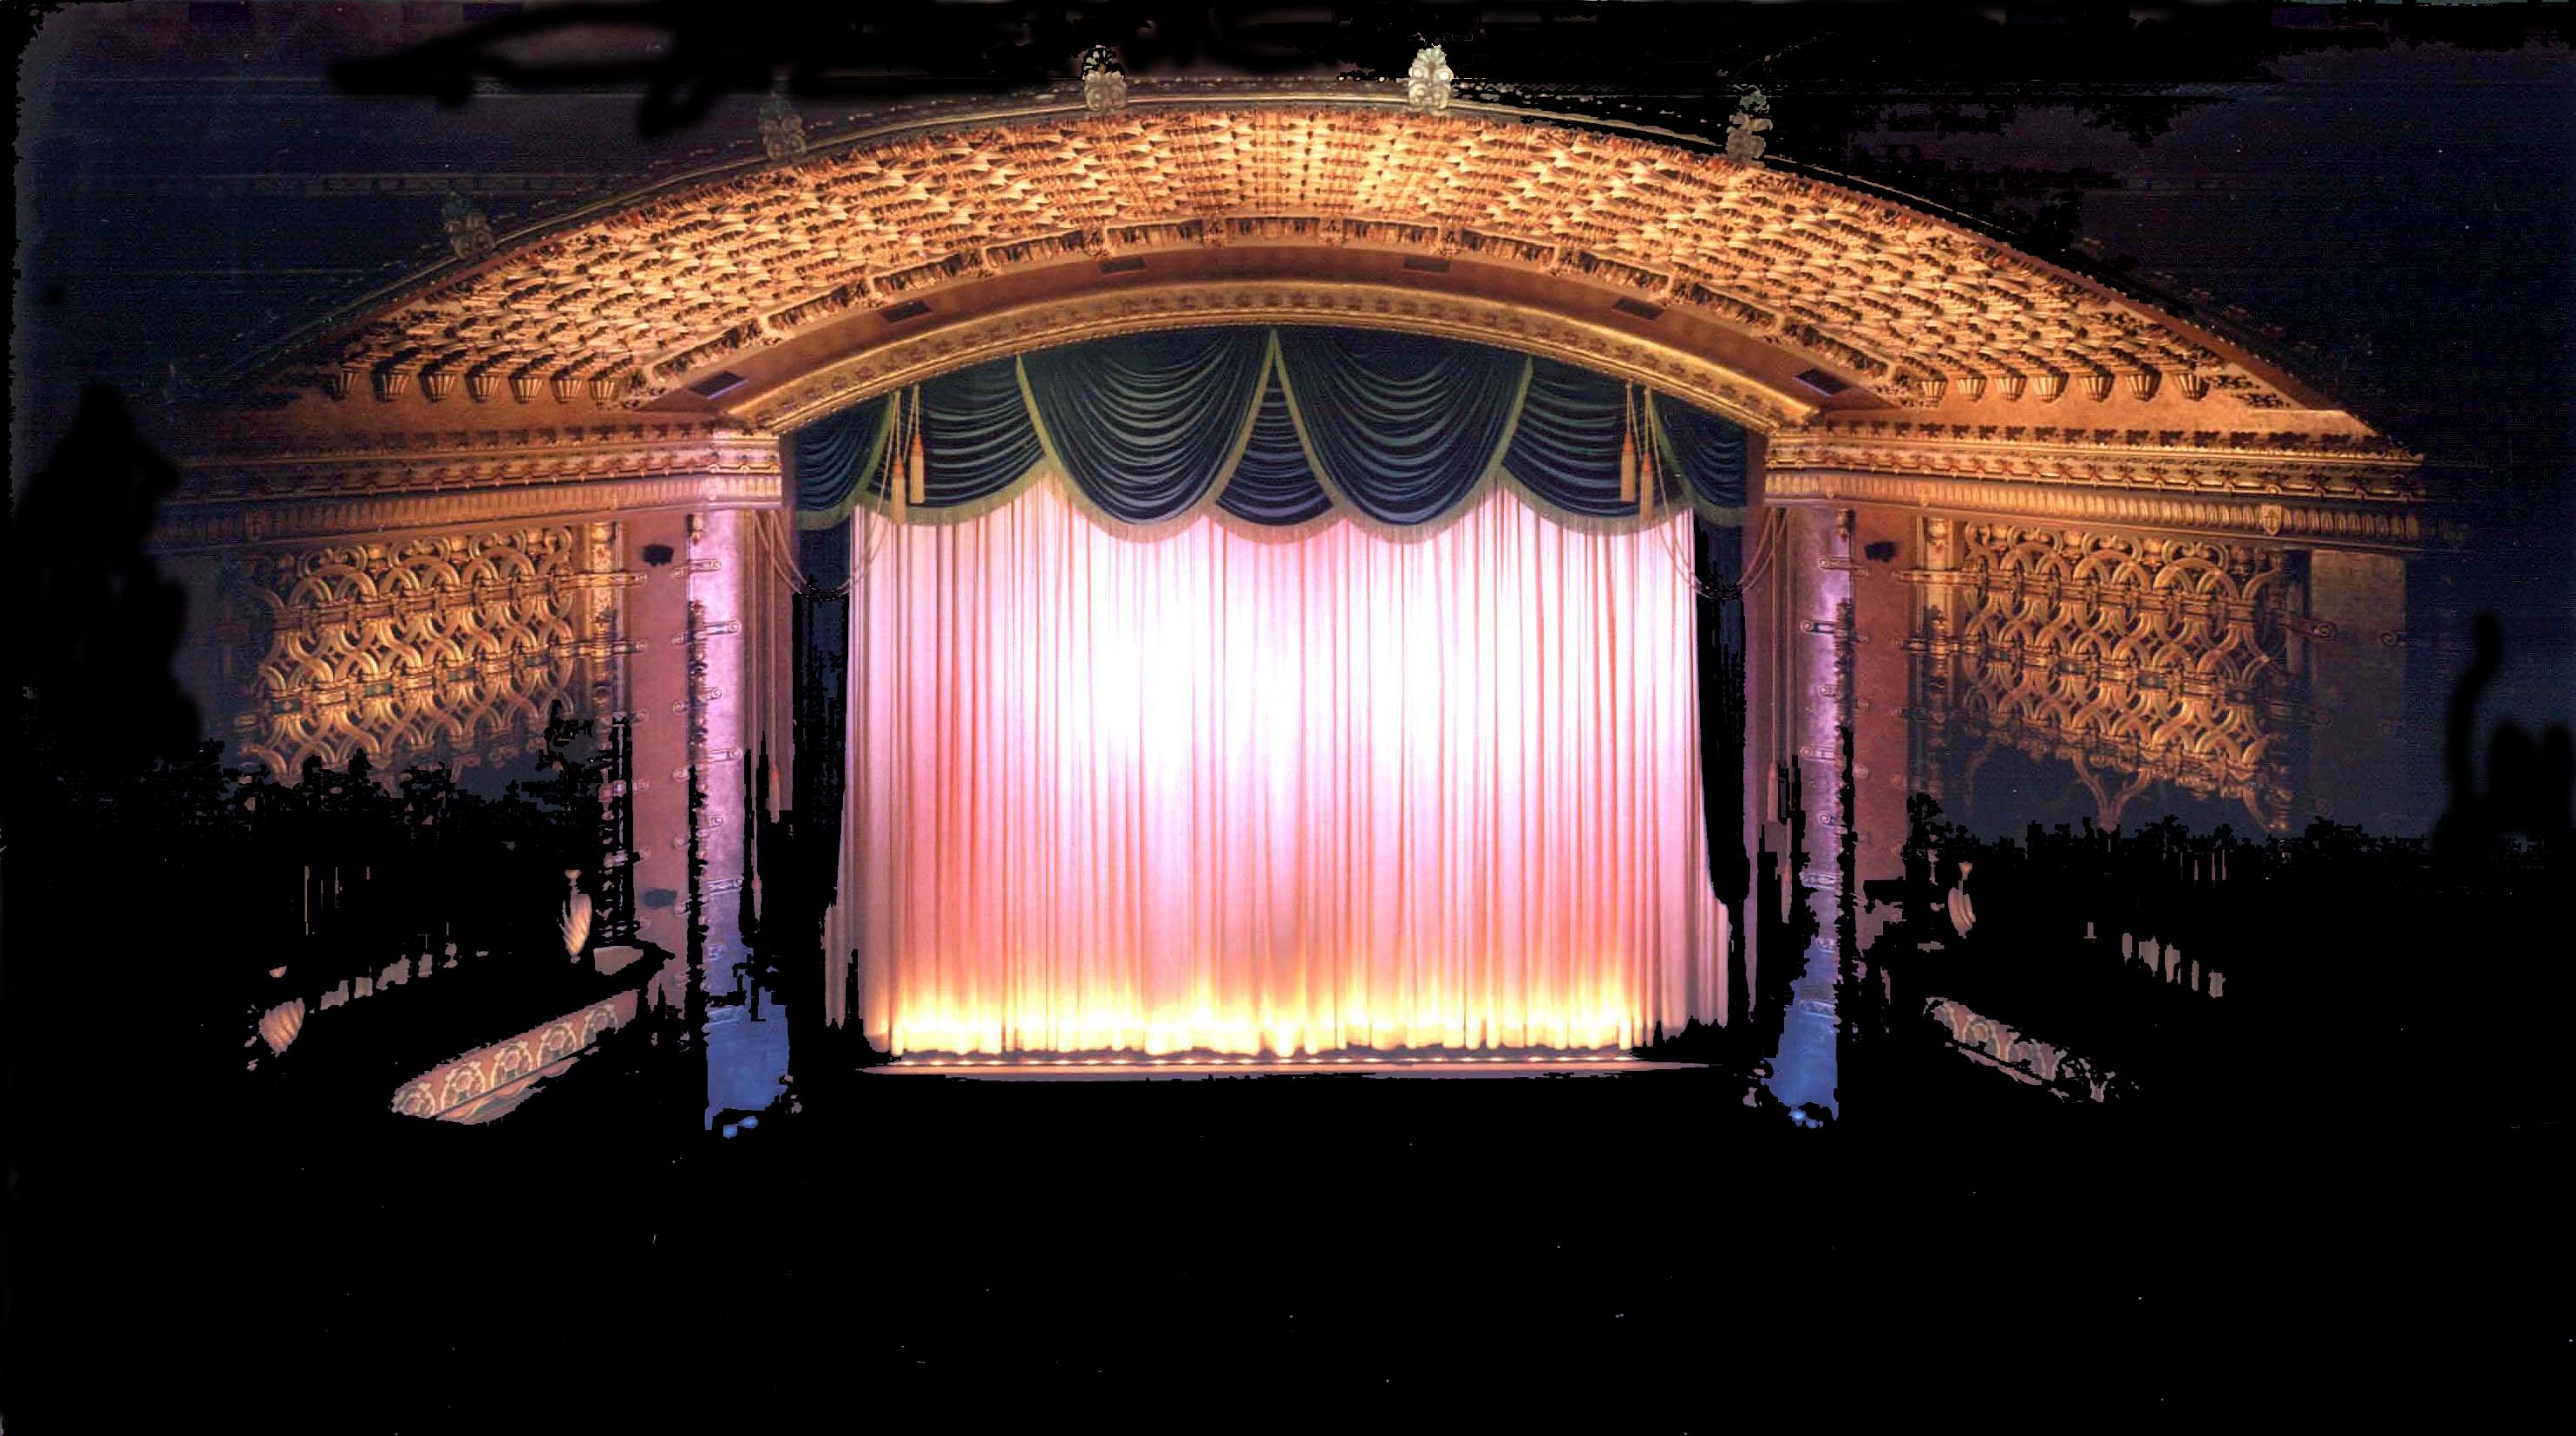 El Capitan Theater